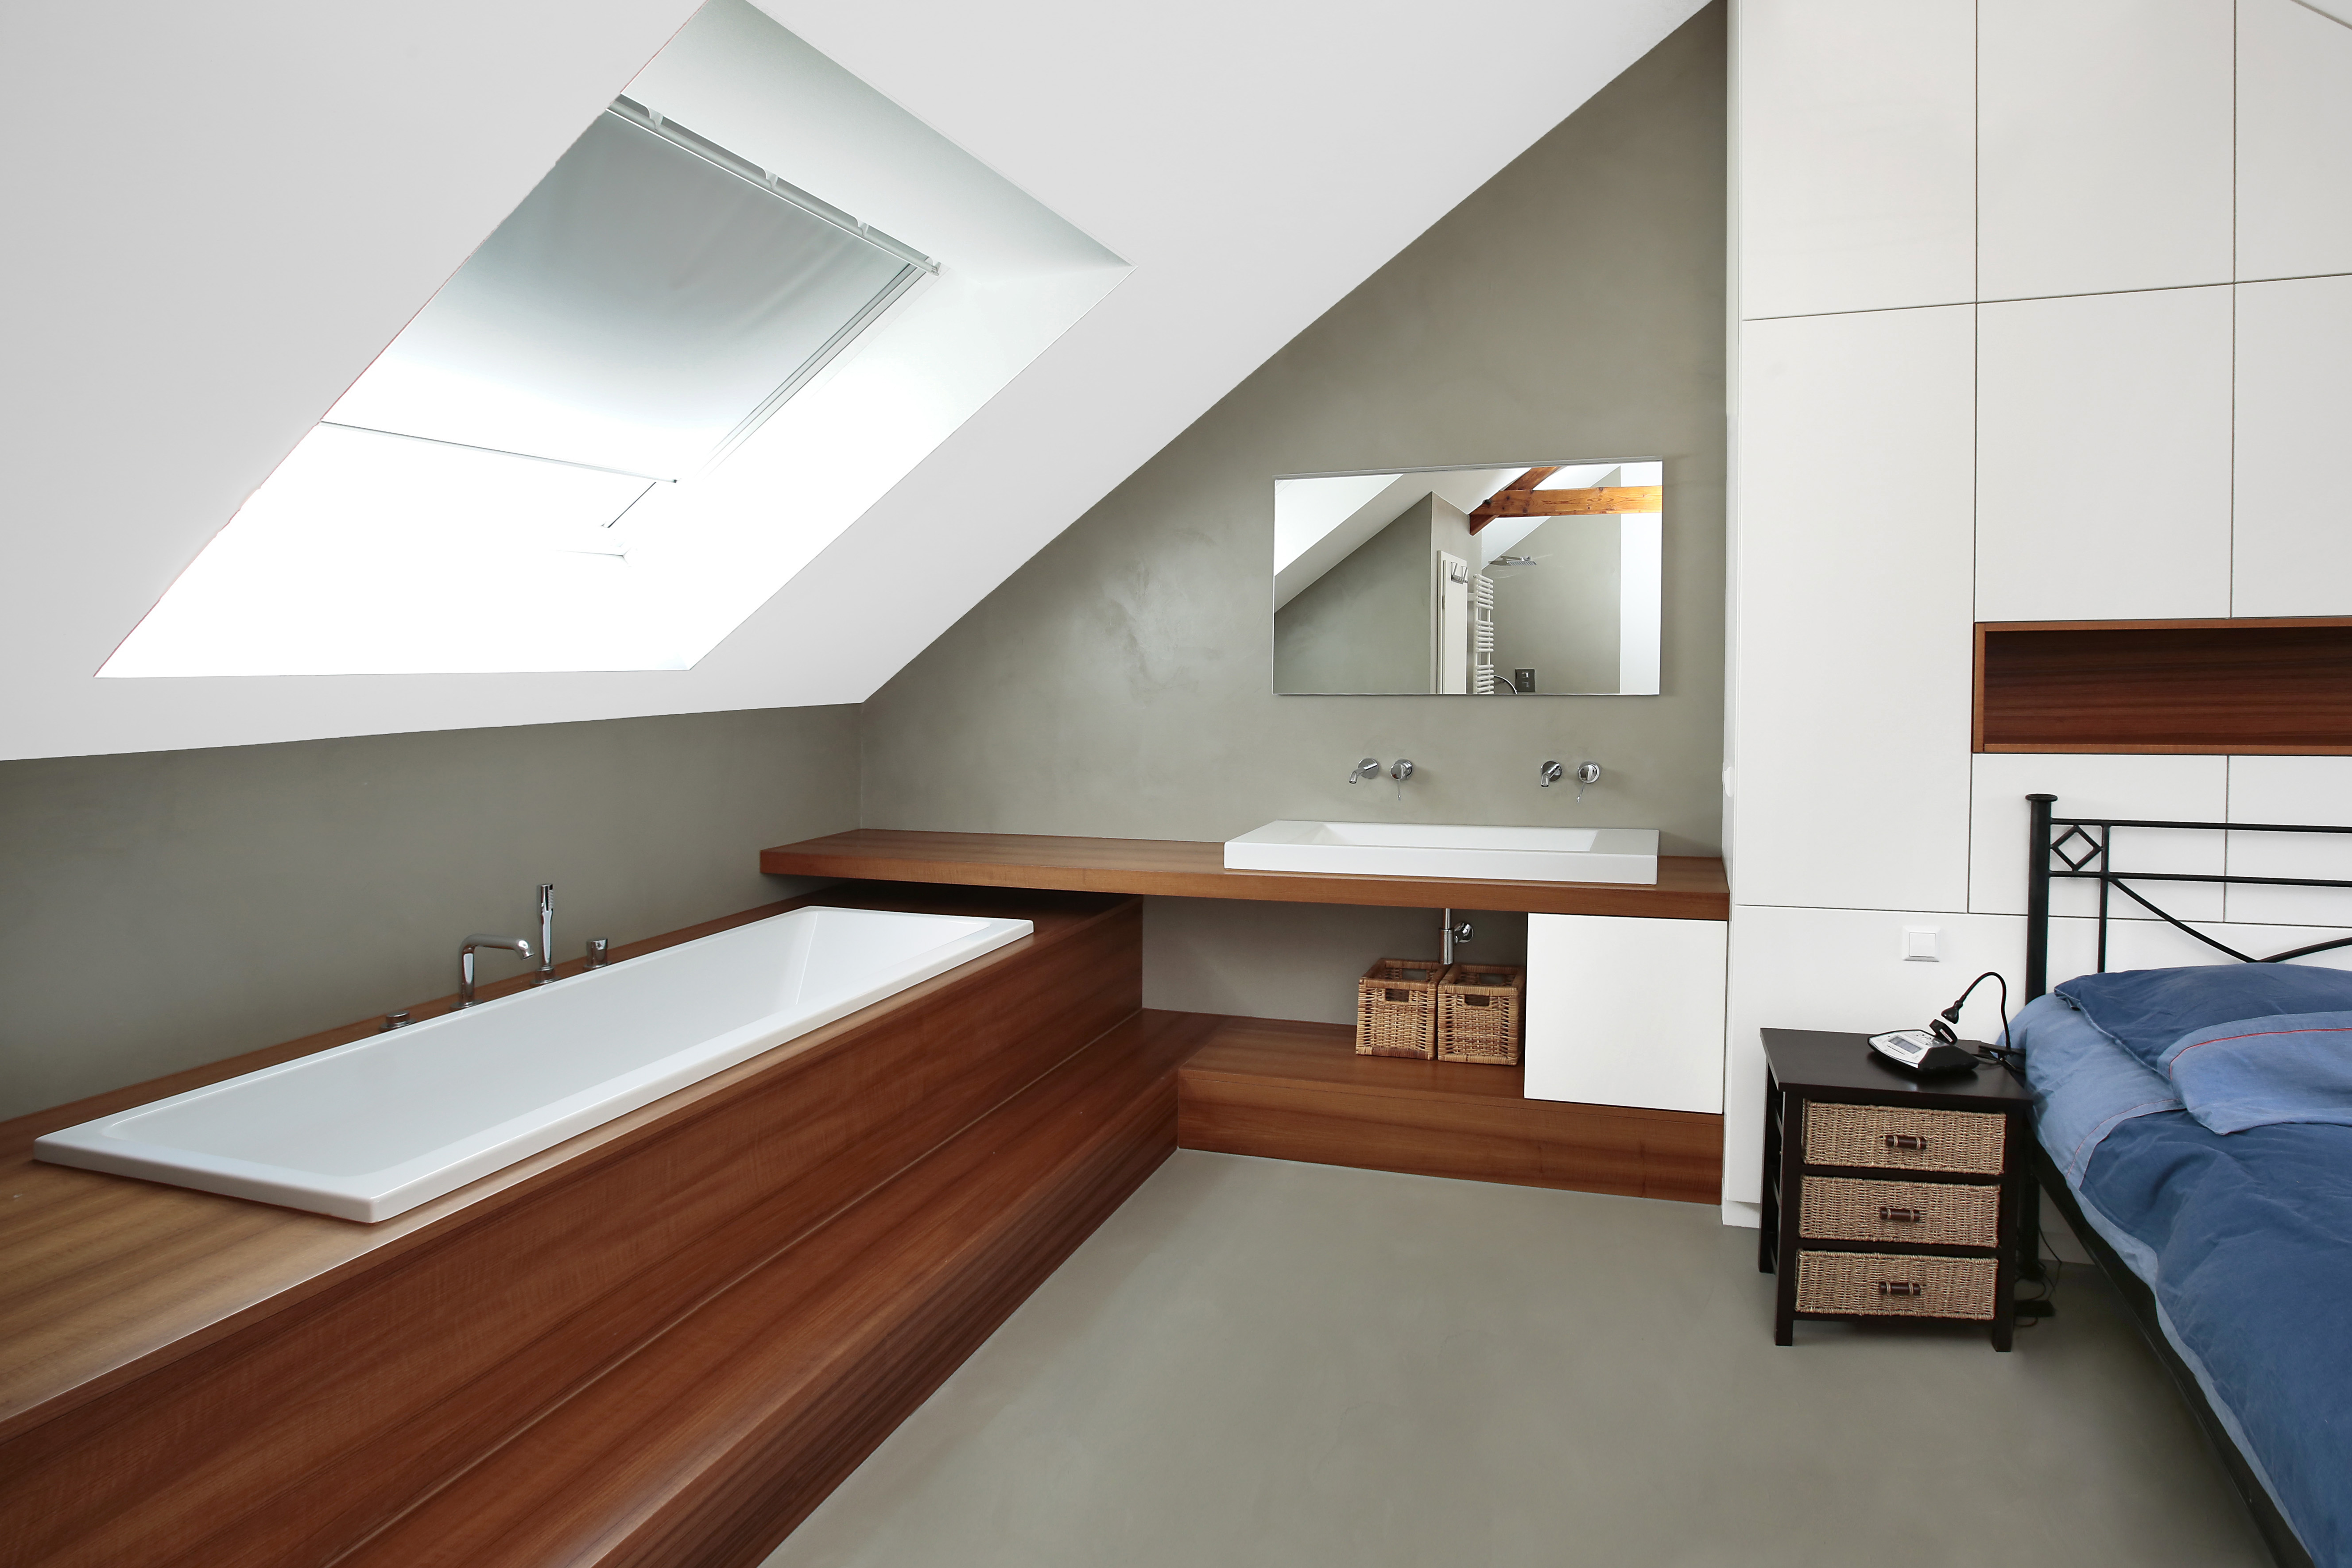 Mikrocement padló beépített fürdőkáddal rendelkező szobában